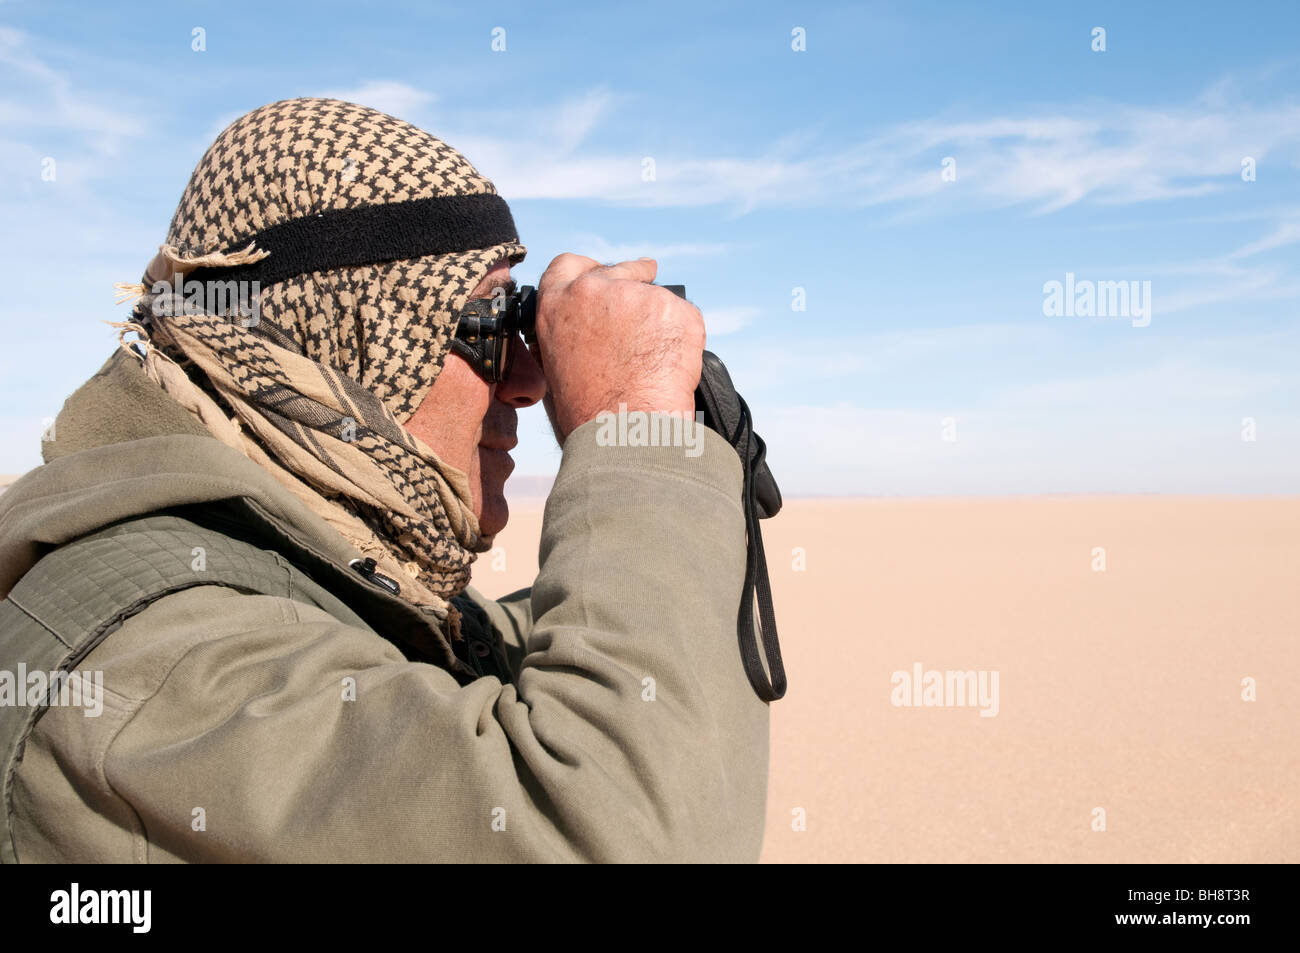 Un guide saharien regarde à travers ses jumelles vers les dunes de sable dans le Gilf Kebir région du désert occidental, dans le sud-ouest de l'Égypte. Banque D'Images